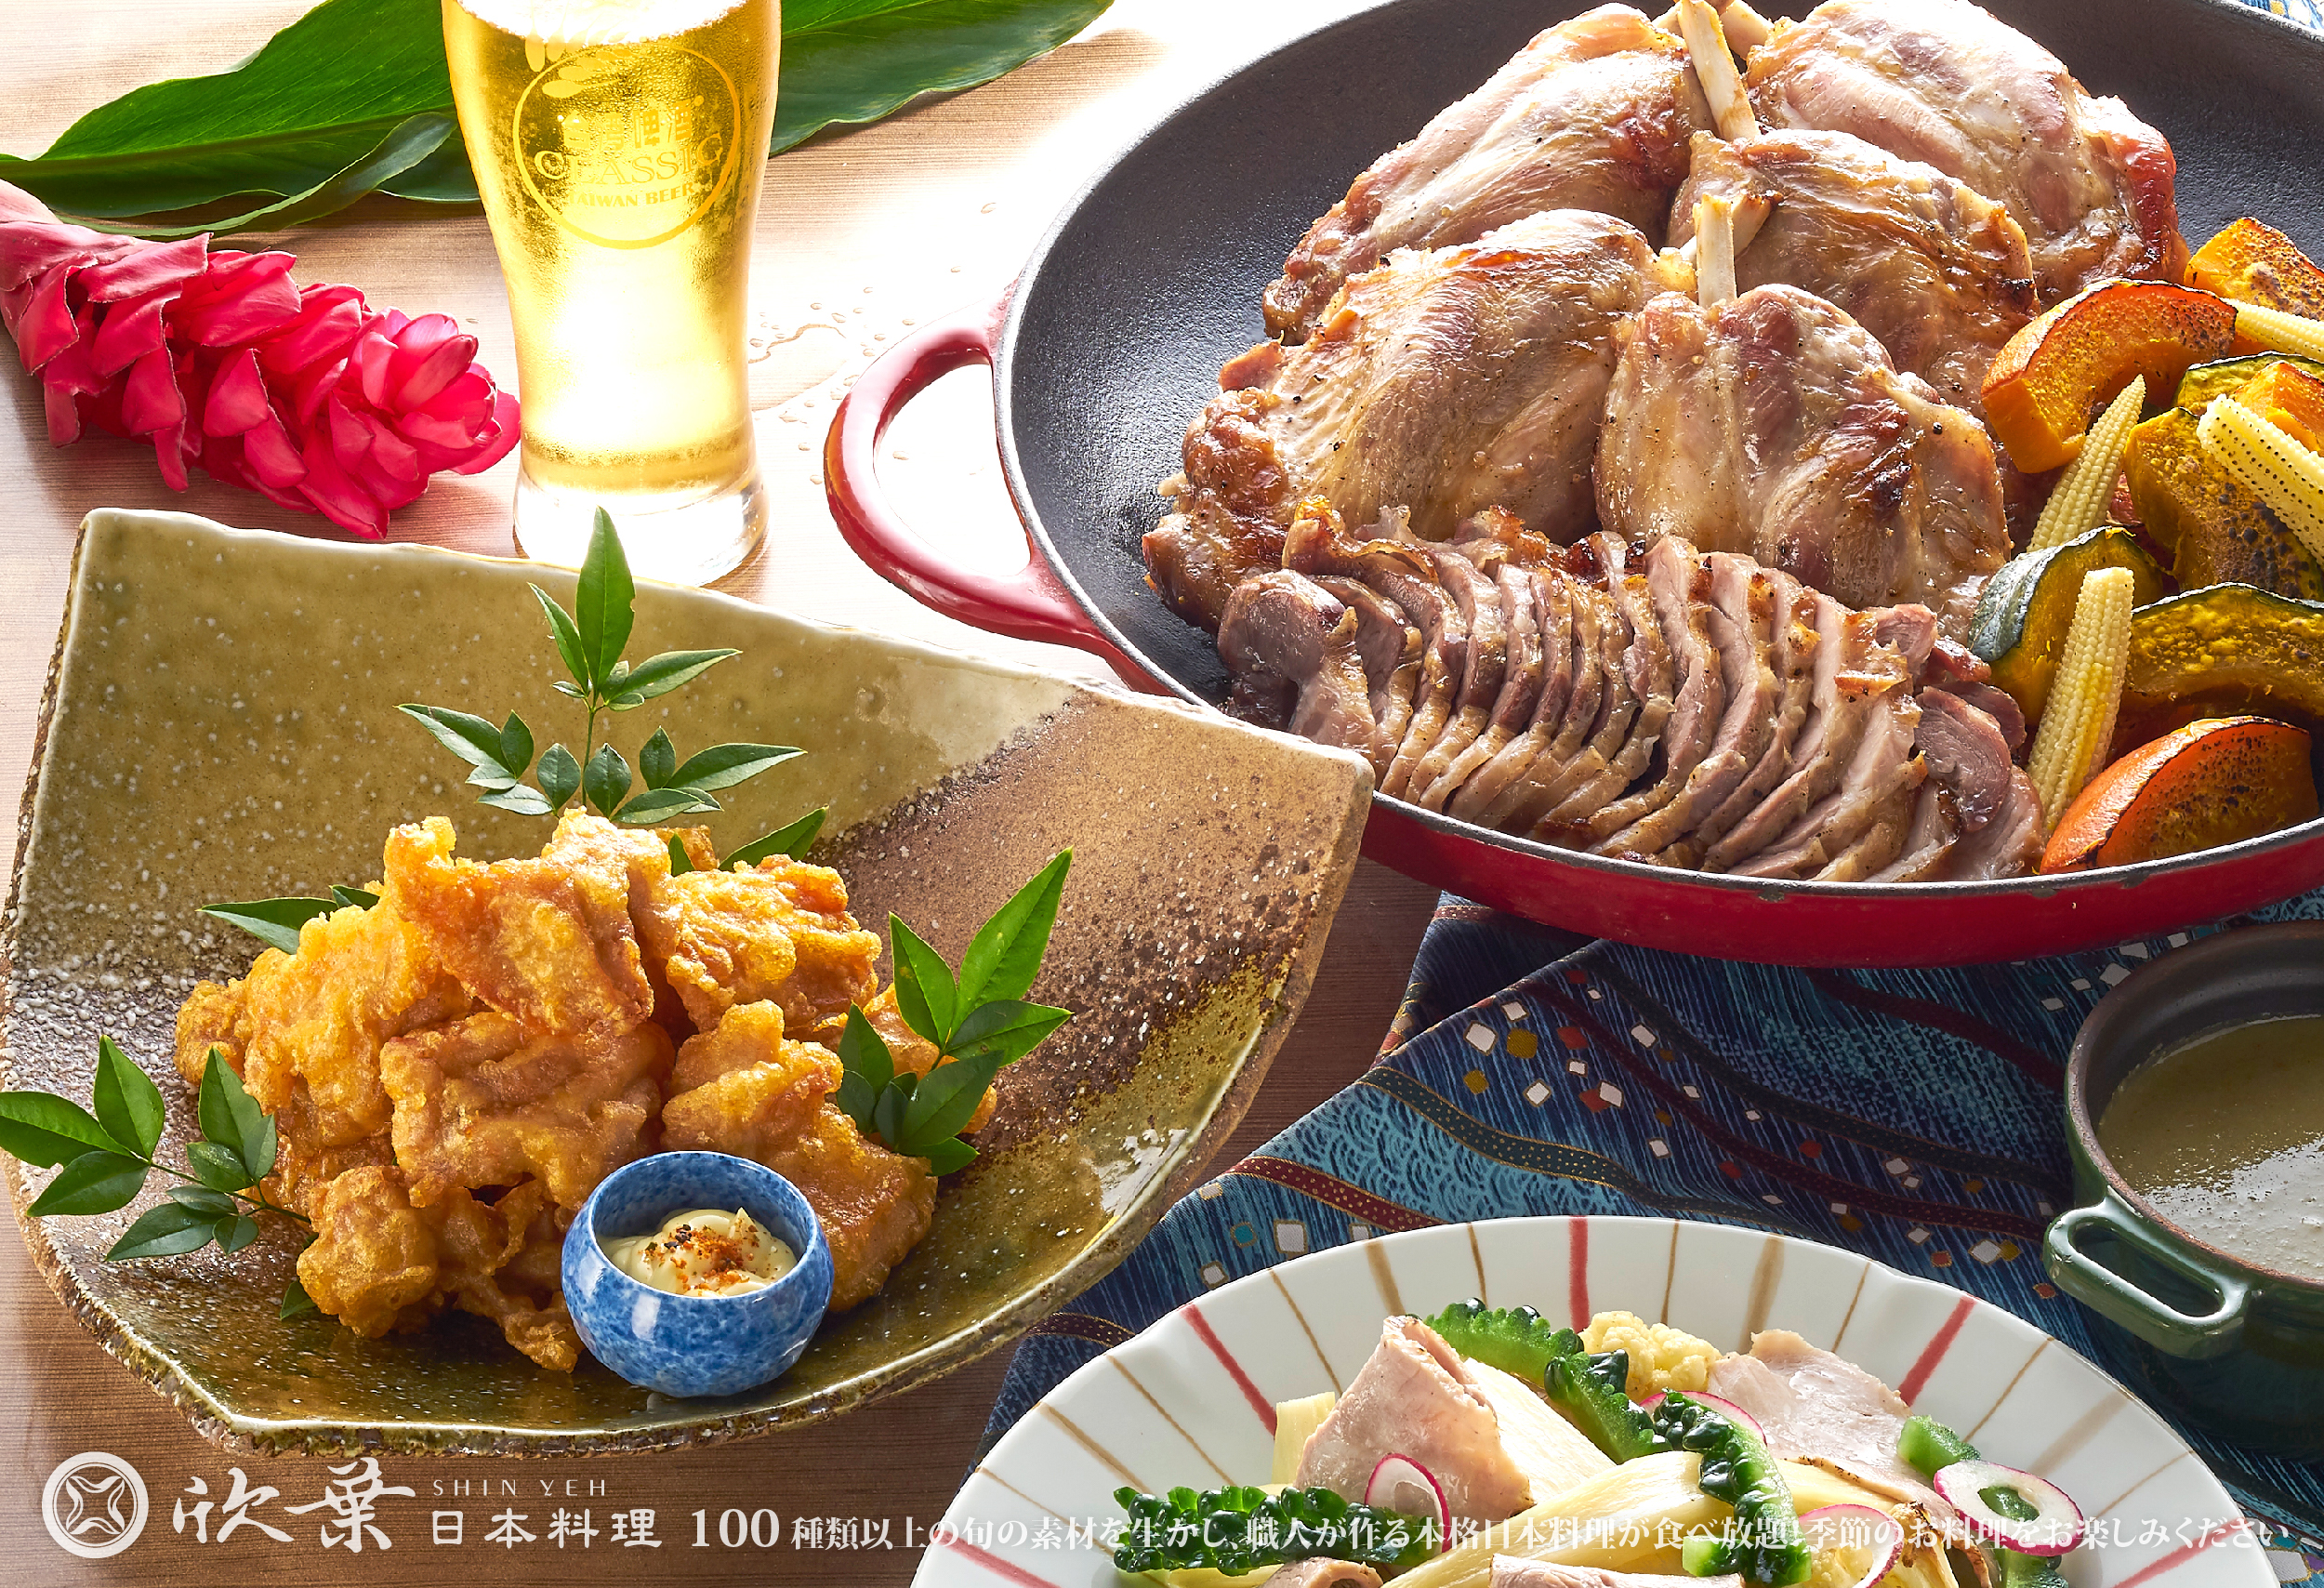 Pork／Beef／Chicken meal